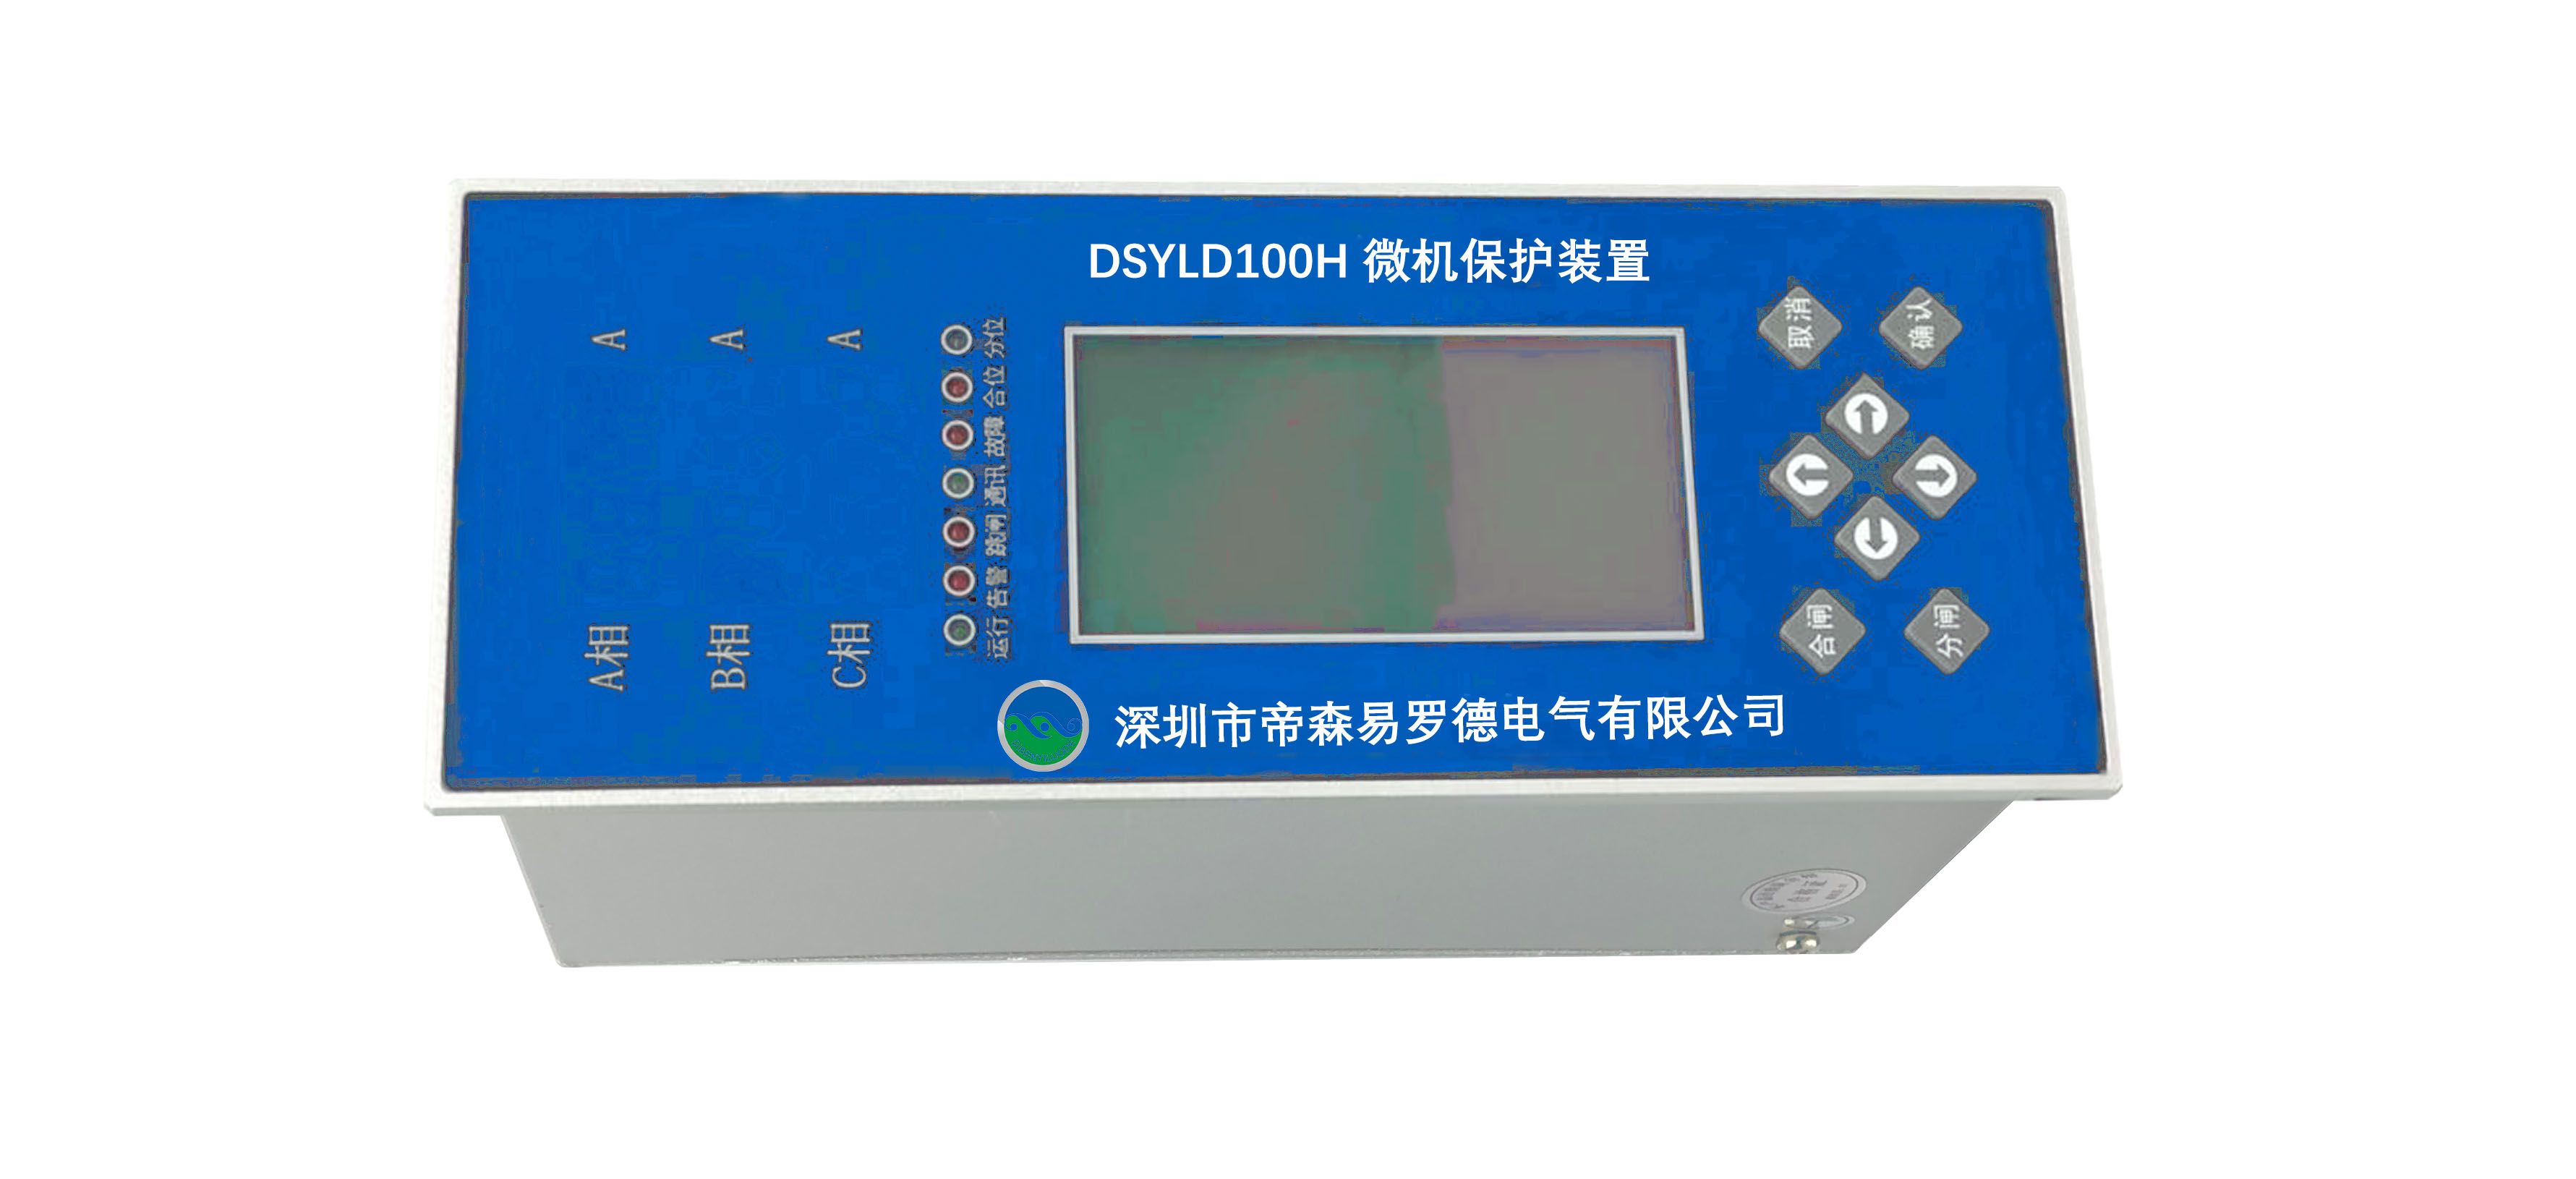 DSYLD100H微机保护装置